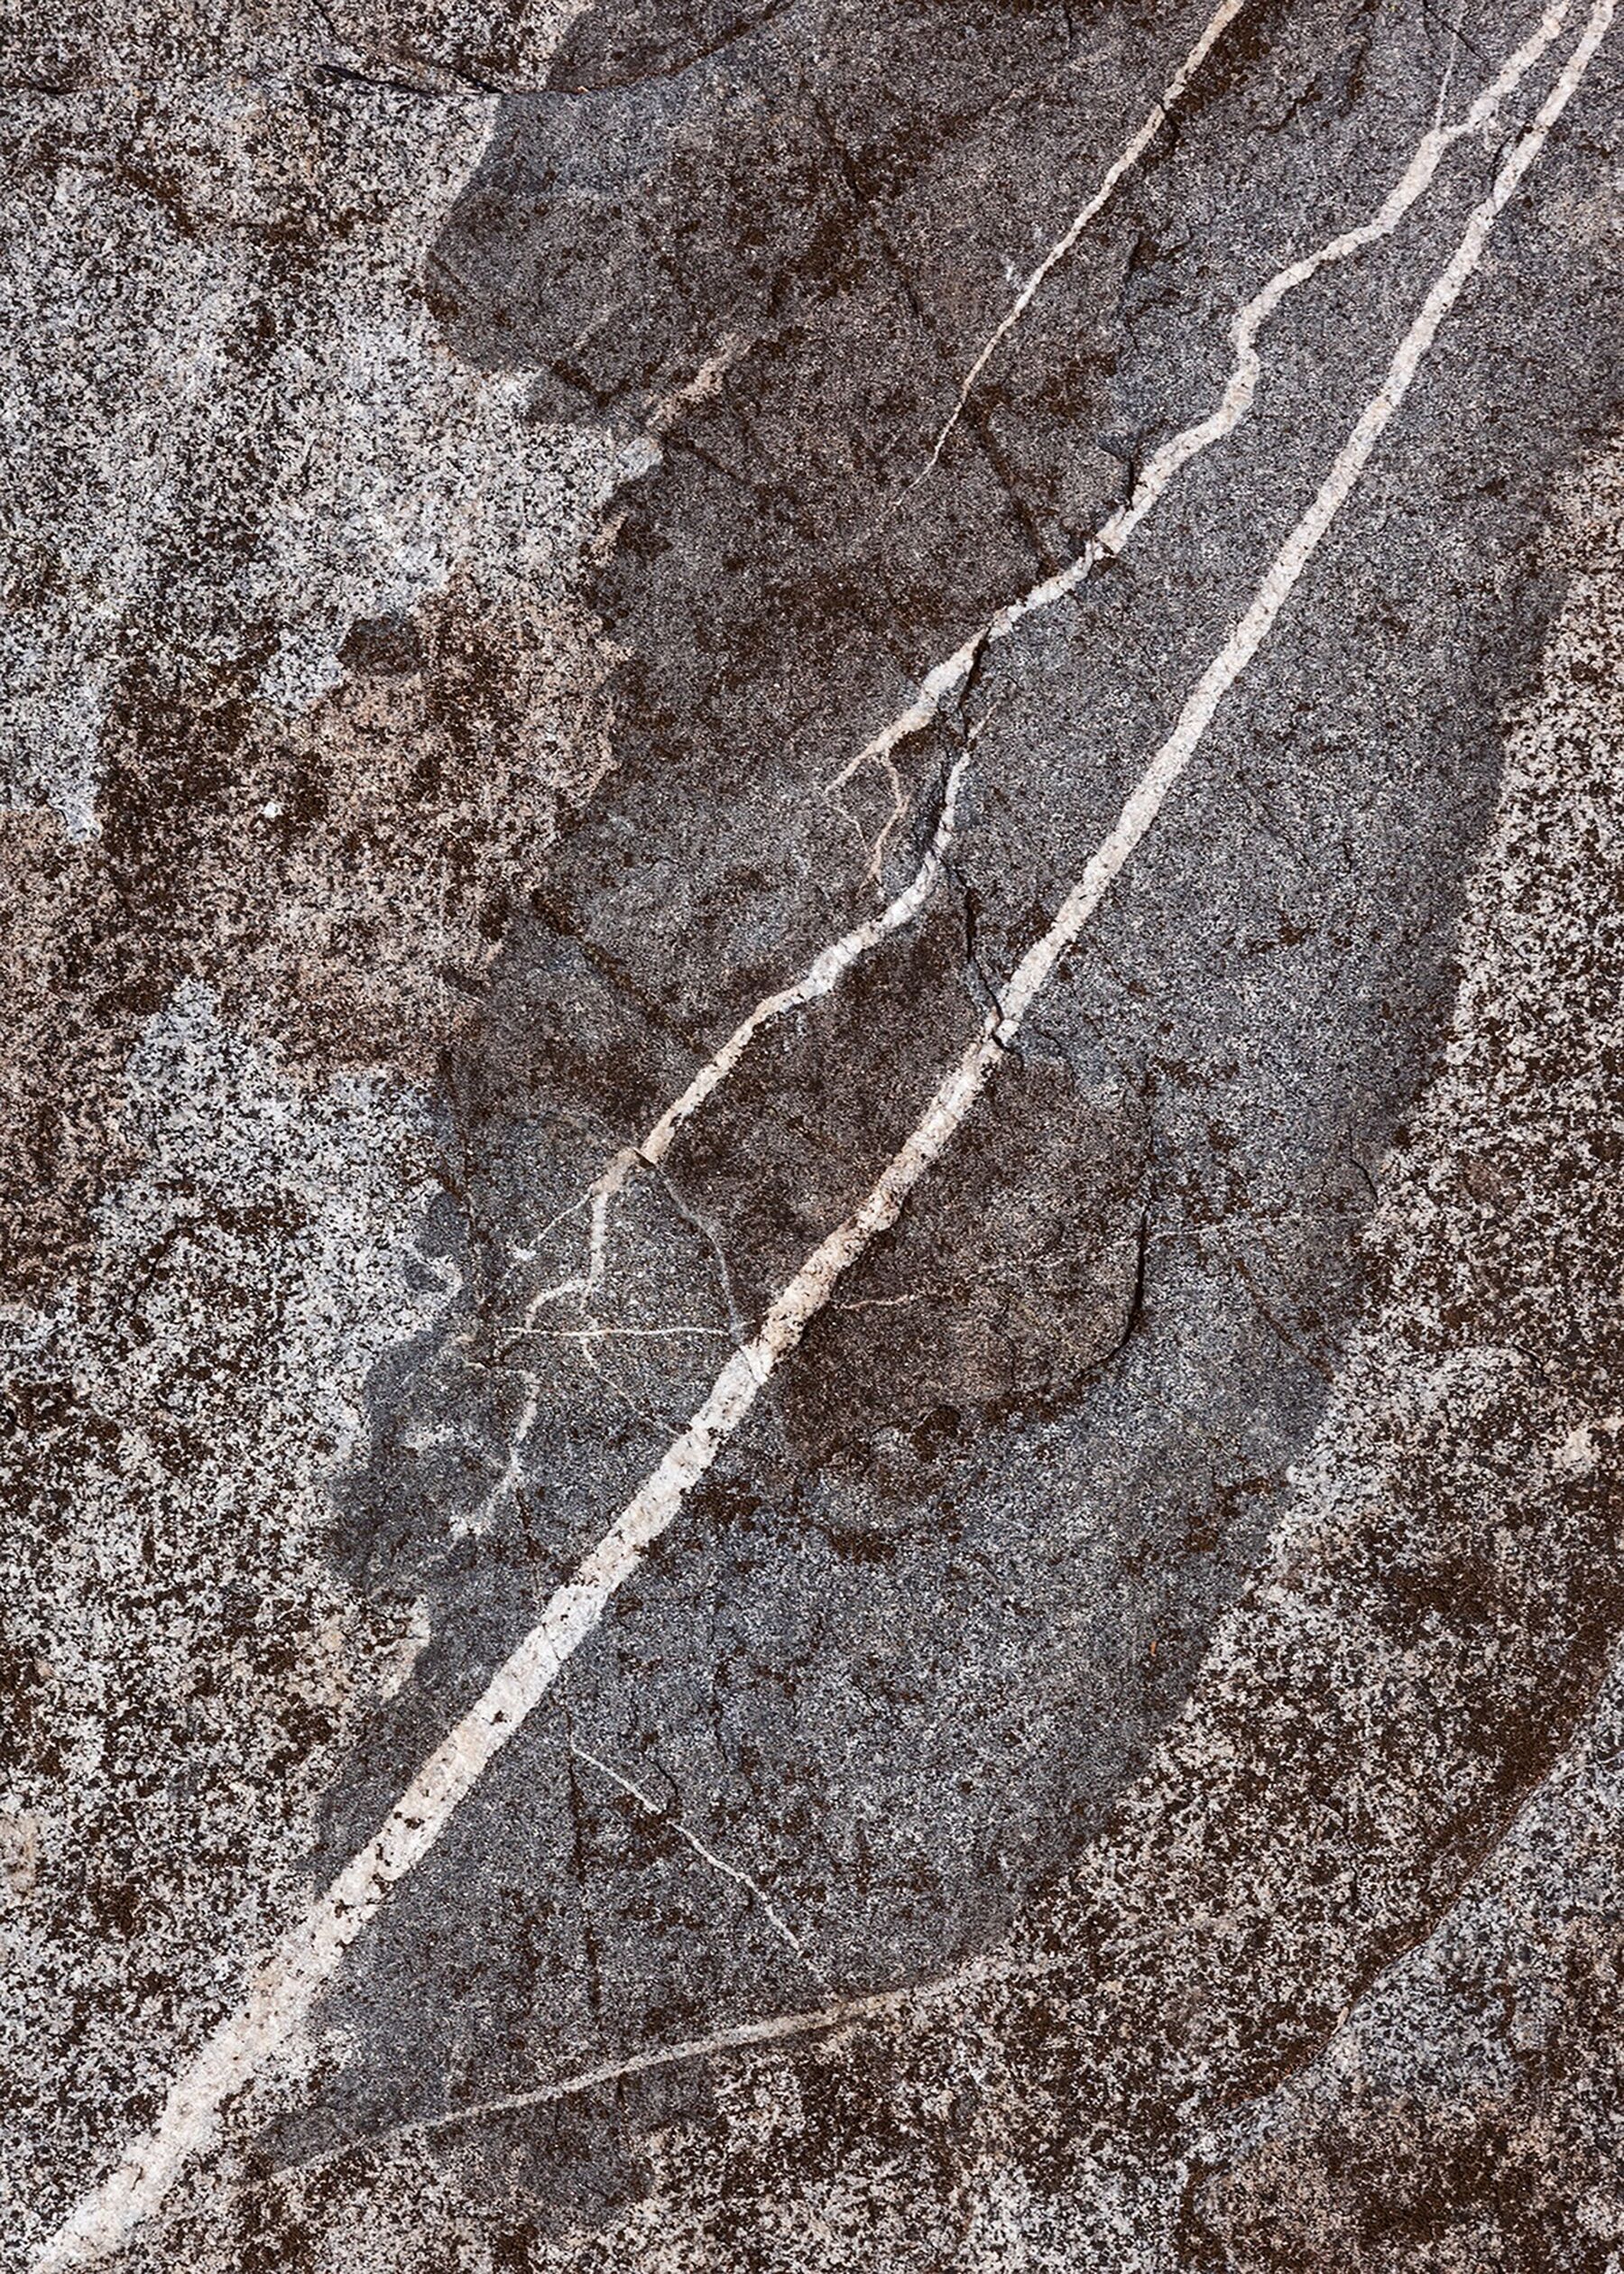 Close-up of granite rock